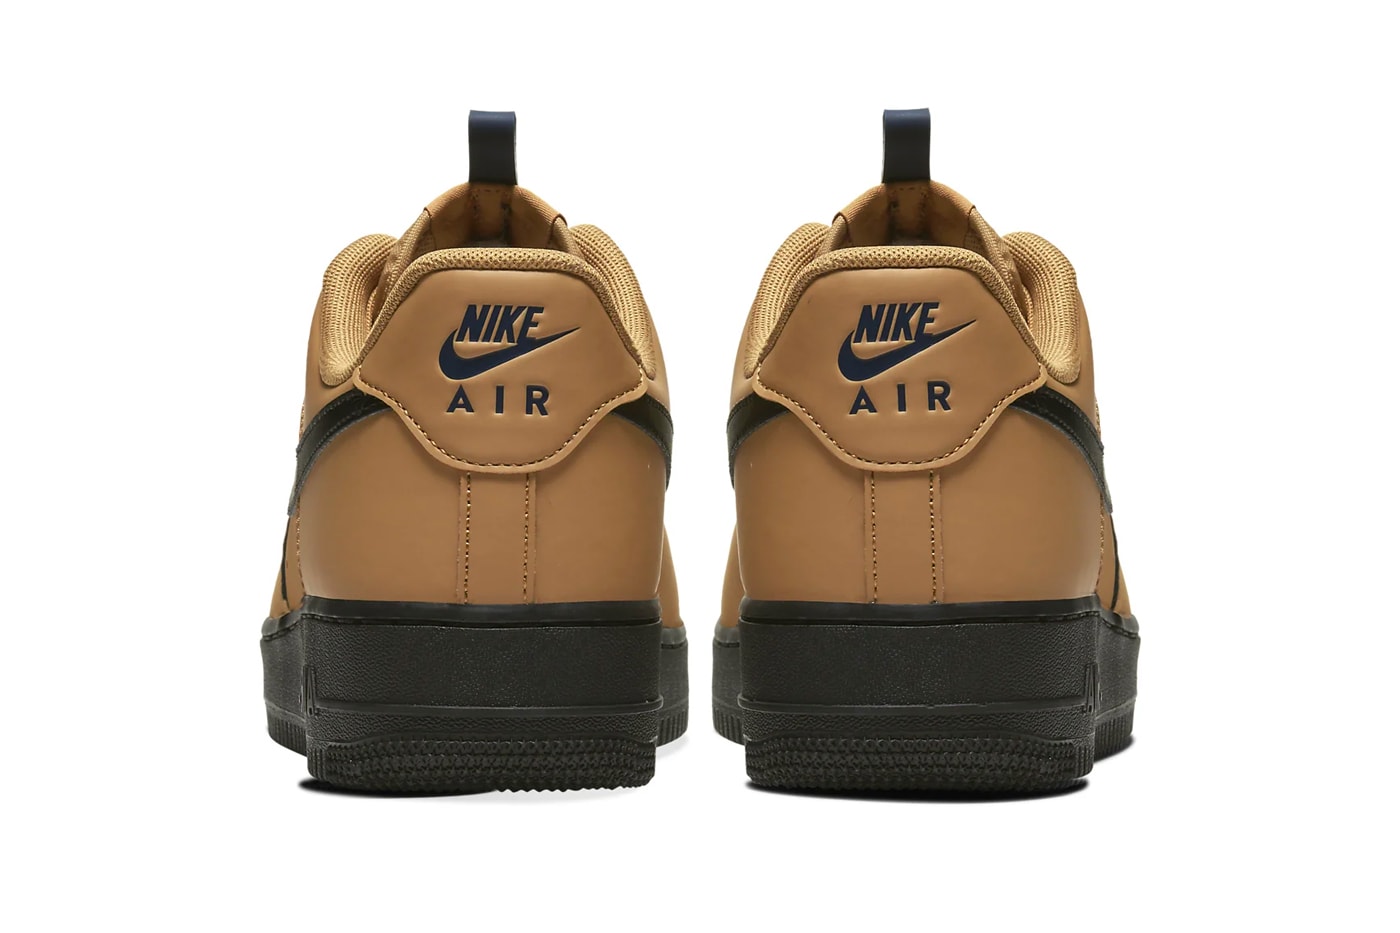 Nike Air Force 1 Wheat Black Midnight navy BQ4326 700 Air Max 90 Cosmic Clay AJ1285 700 footwear shoes sneakers swoosh brown hazel beige